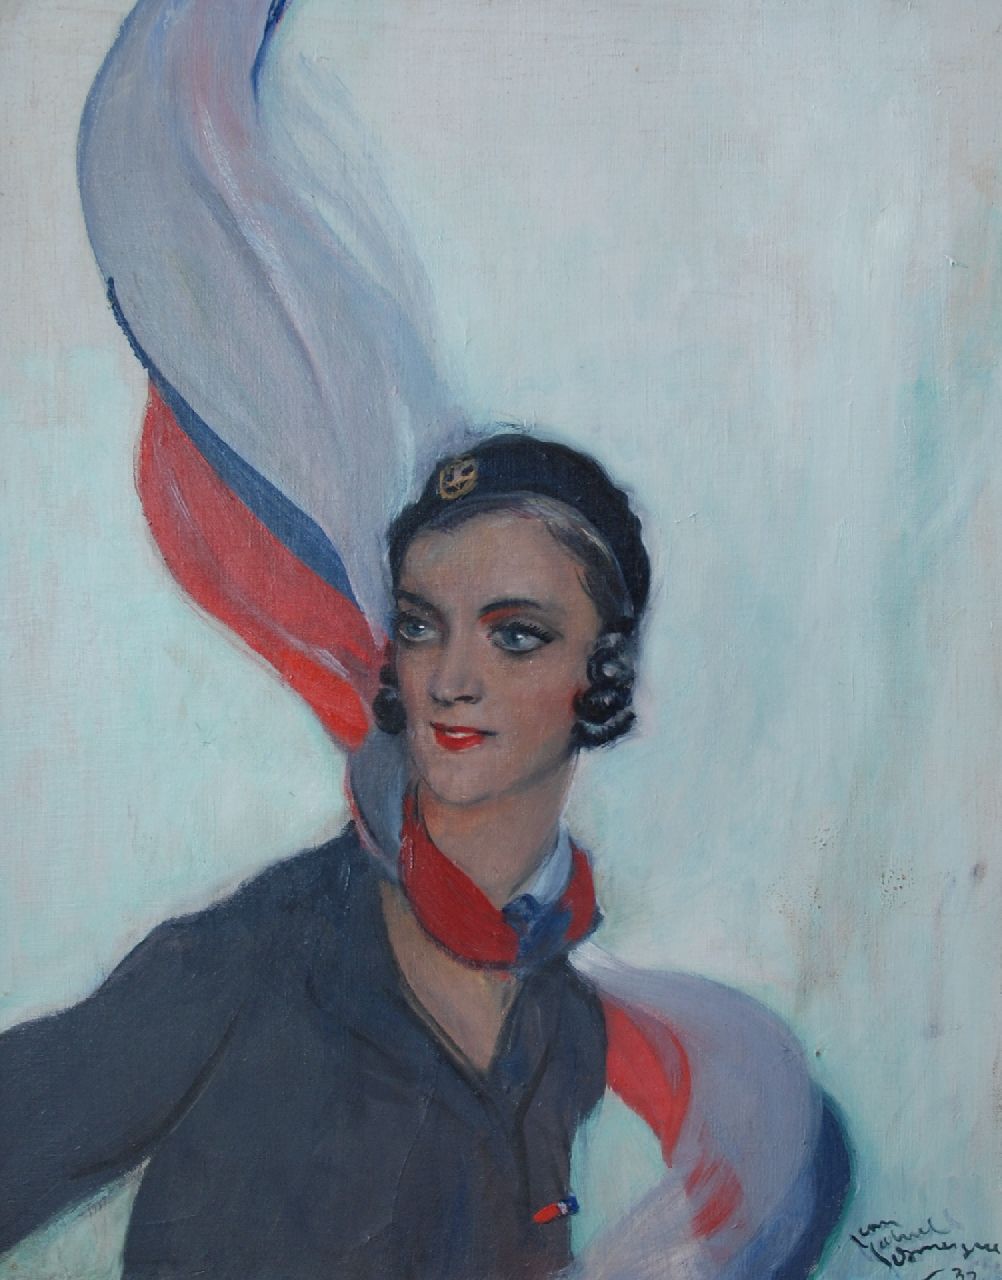 Domergue J.G.  | Jean-Gabriel Domergue | Schilderijen te koop aangeboden | Jonge vrouw met gekleurde sjaal, olieverf op doek 82,5 x 65,0 cm, gesigneerd rechtsonder en gedateerd '32